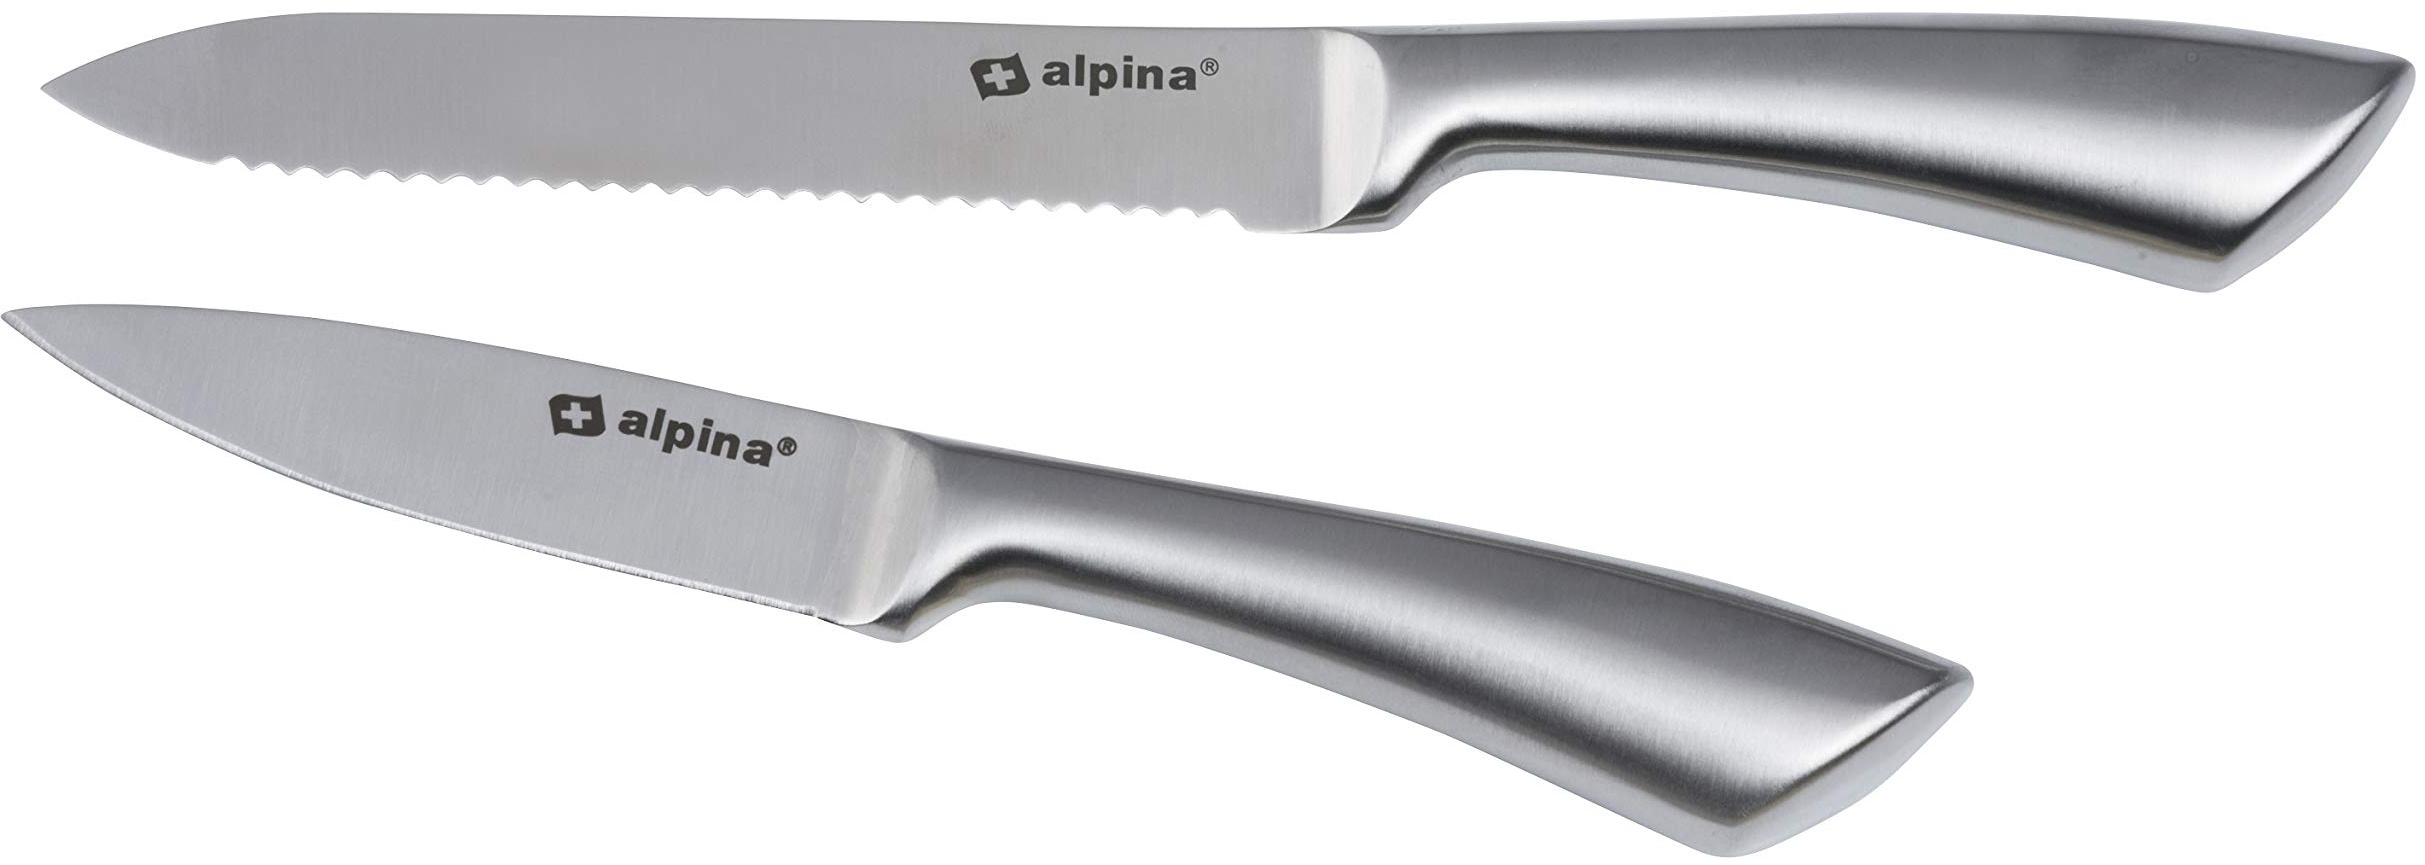 alpina Kochmesserset 2-Teilig - Profi Messerset - Multifunktionales Chefmesser - Bestückt für Küchen - Allzweckmesser aus Edelstahl - Brotmesser - 20 und 24 cm - Silber,